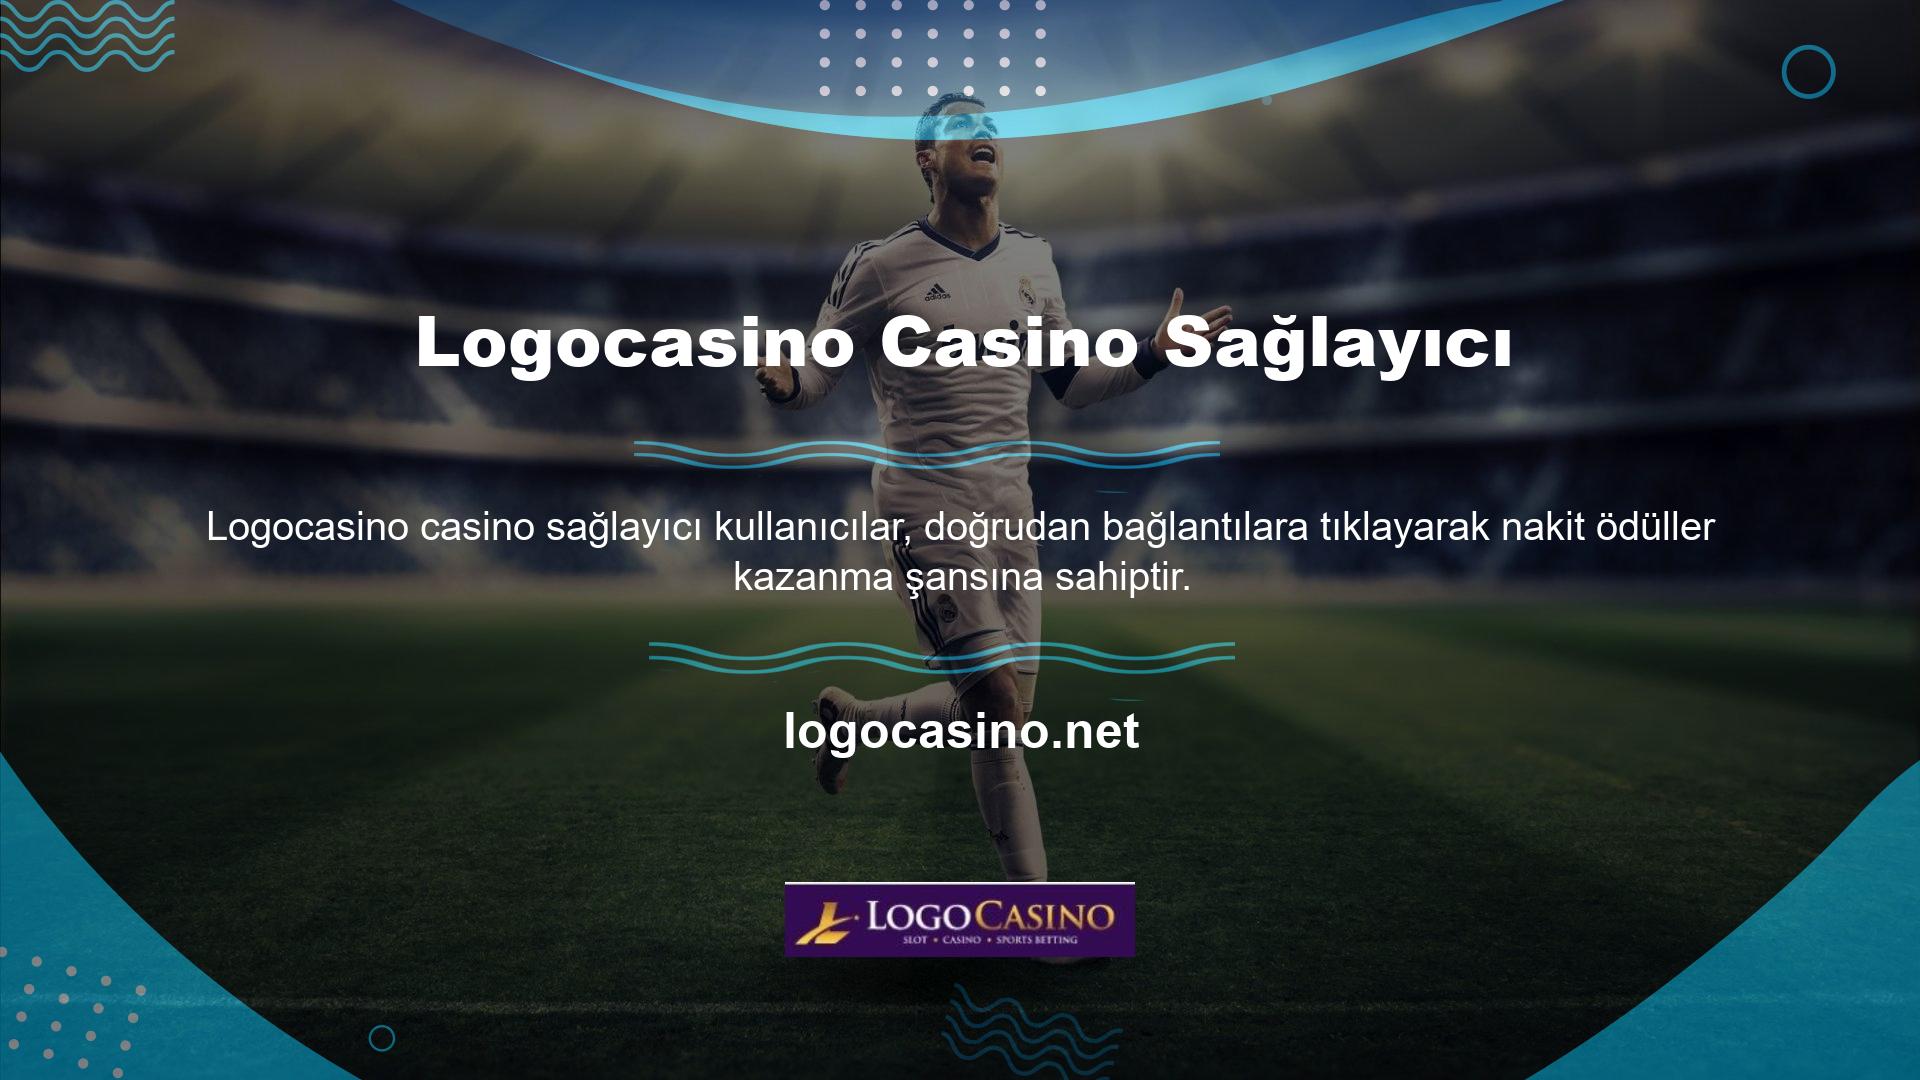 Logocasino sosyal medya hesaplarının ev sahipliğinde kullanıcılara skor, ilk golün ne zaman atılacağı ve özel etkinliklerde kimin gol atacağı gibi sorular sorulacak